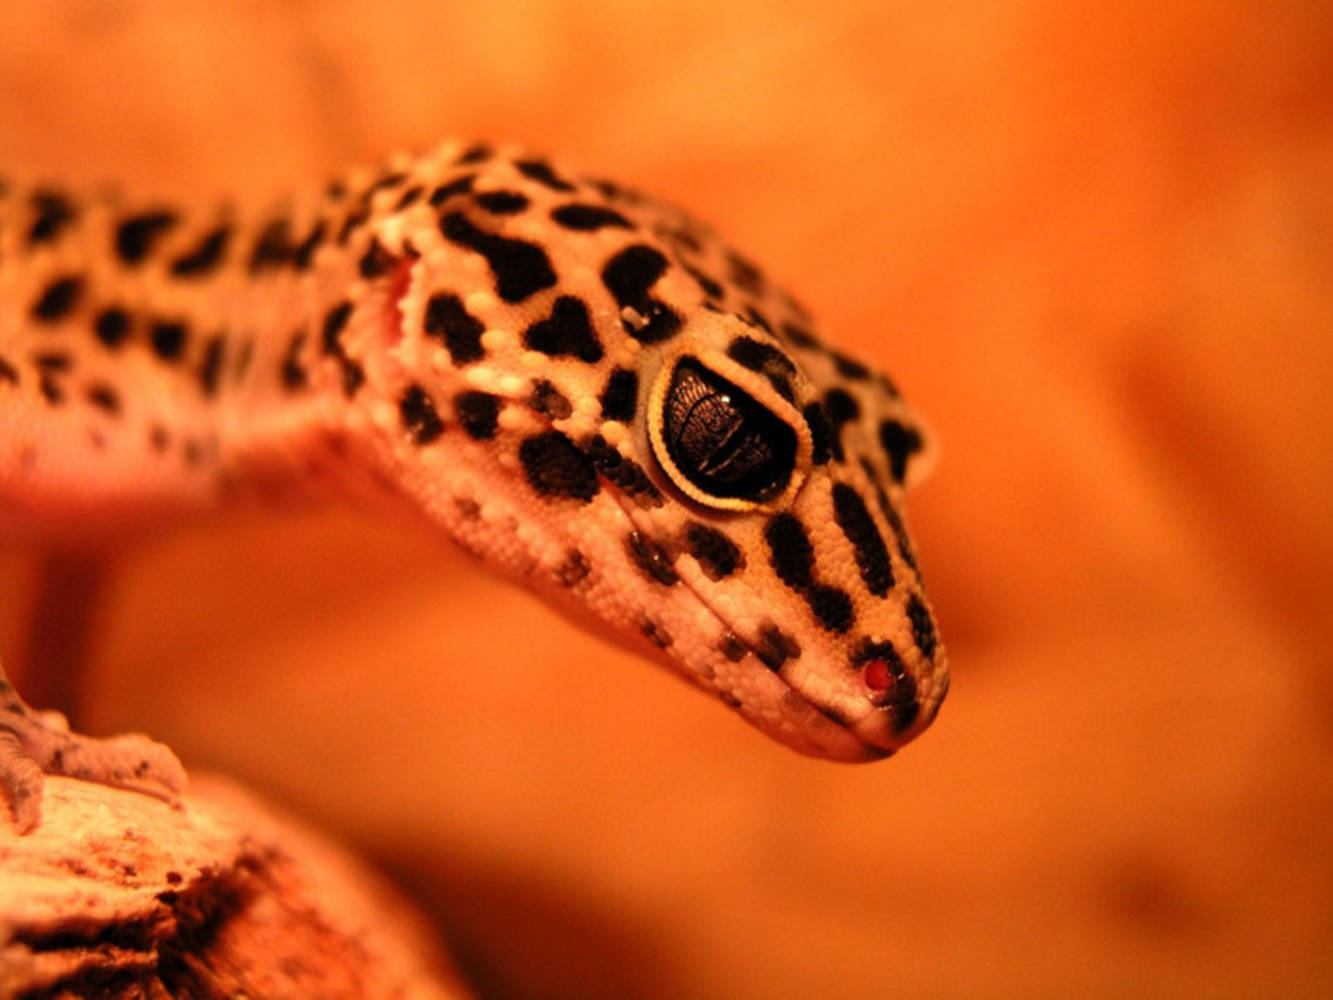 Afgan Leopard Gecko On Dried Wood